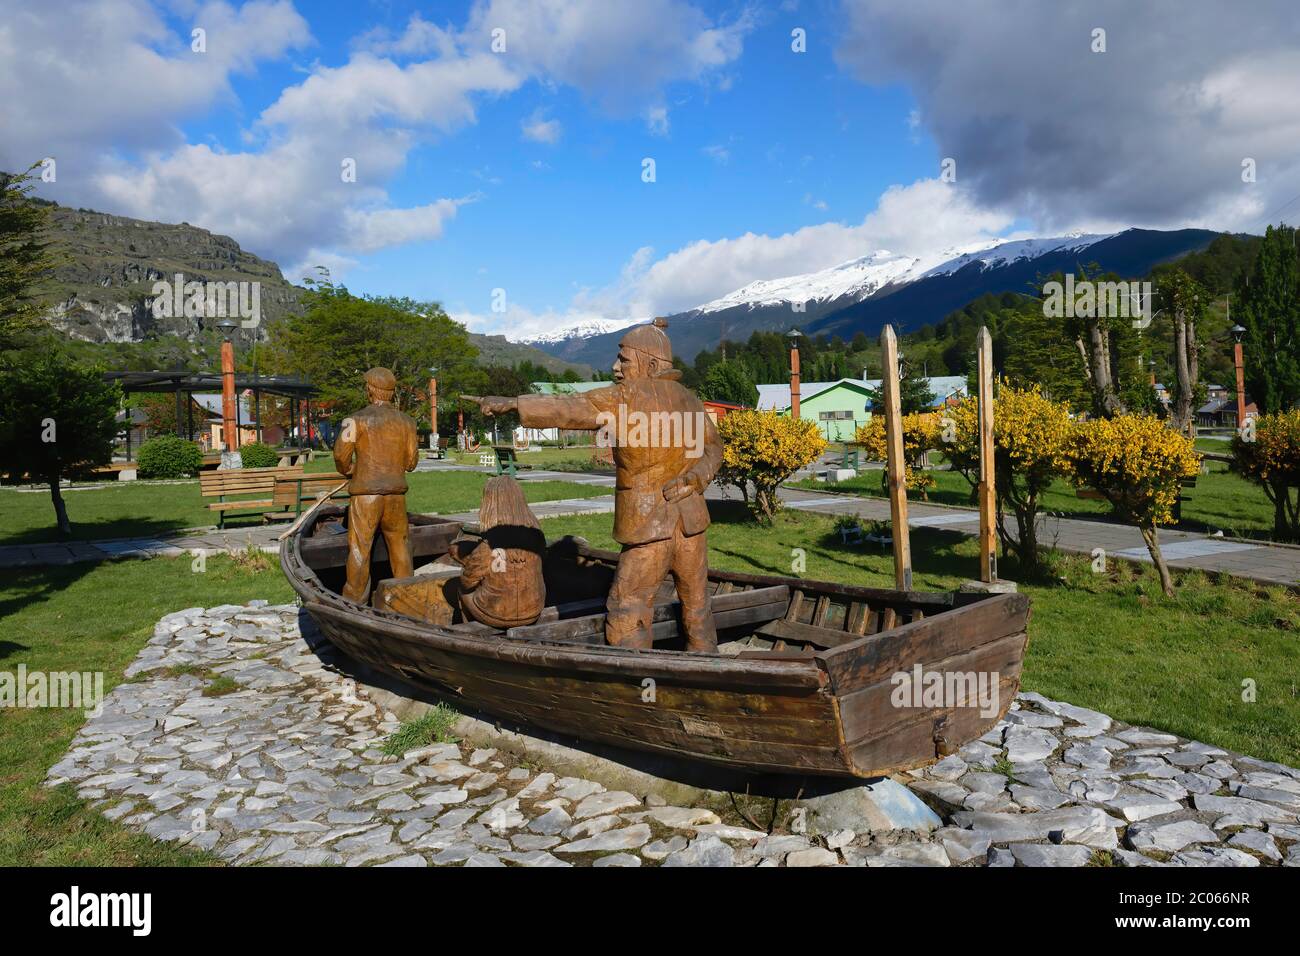 Puerto Rio Tranquilo, place principale, sculpture en bois représentant les pêcheurs, Carretera Austral, région d'Aysen, Patagonie Banque D'Images